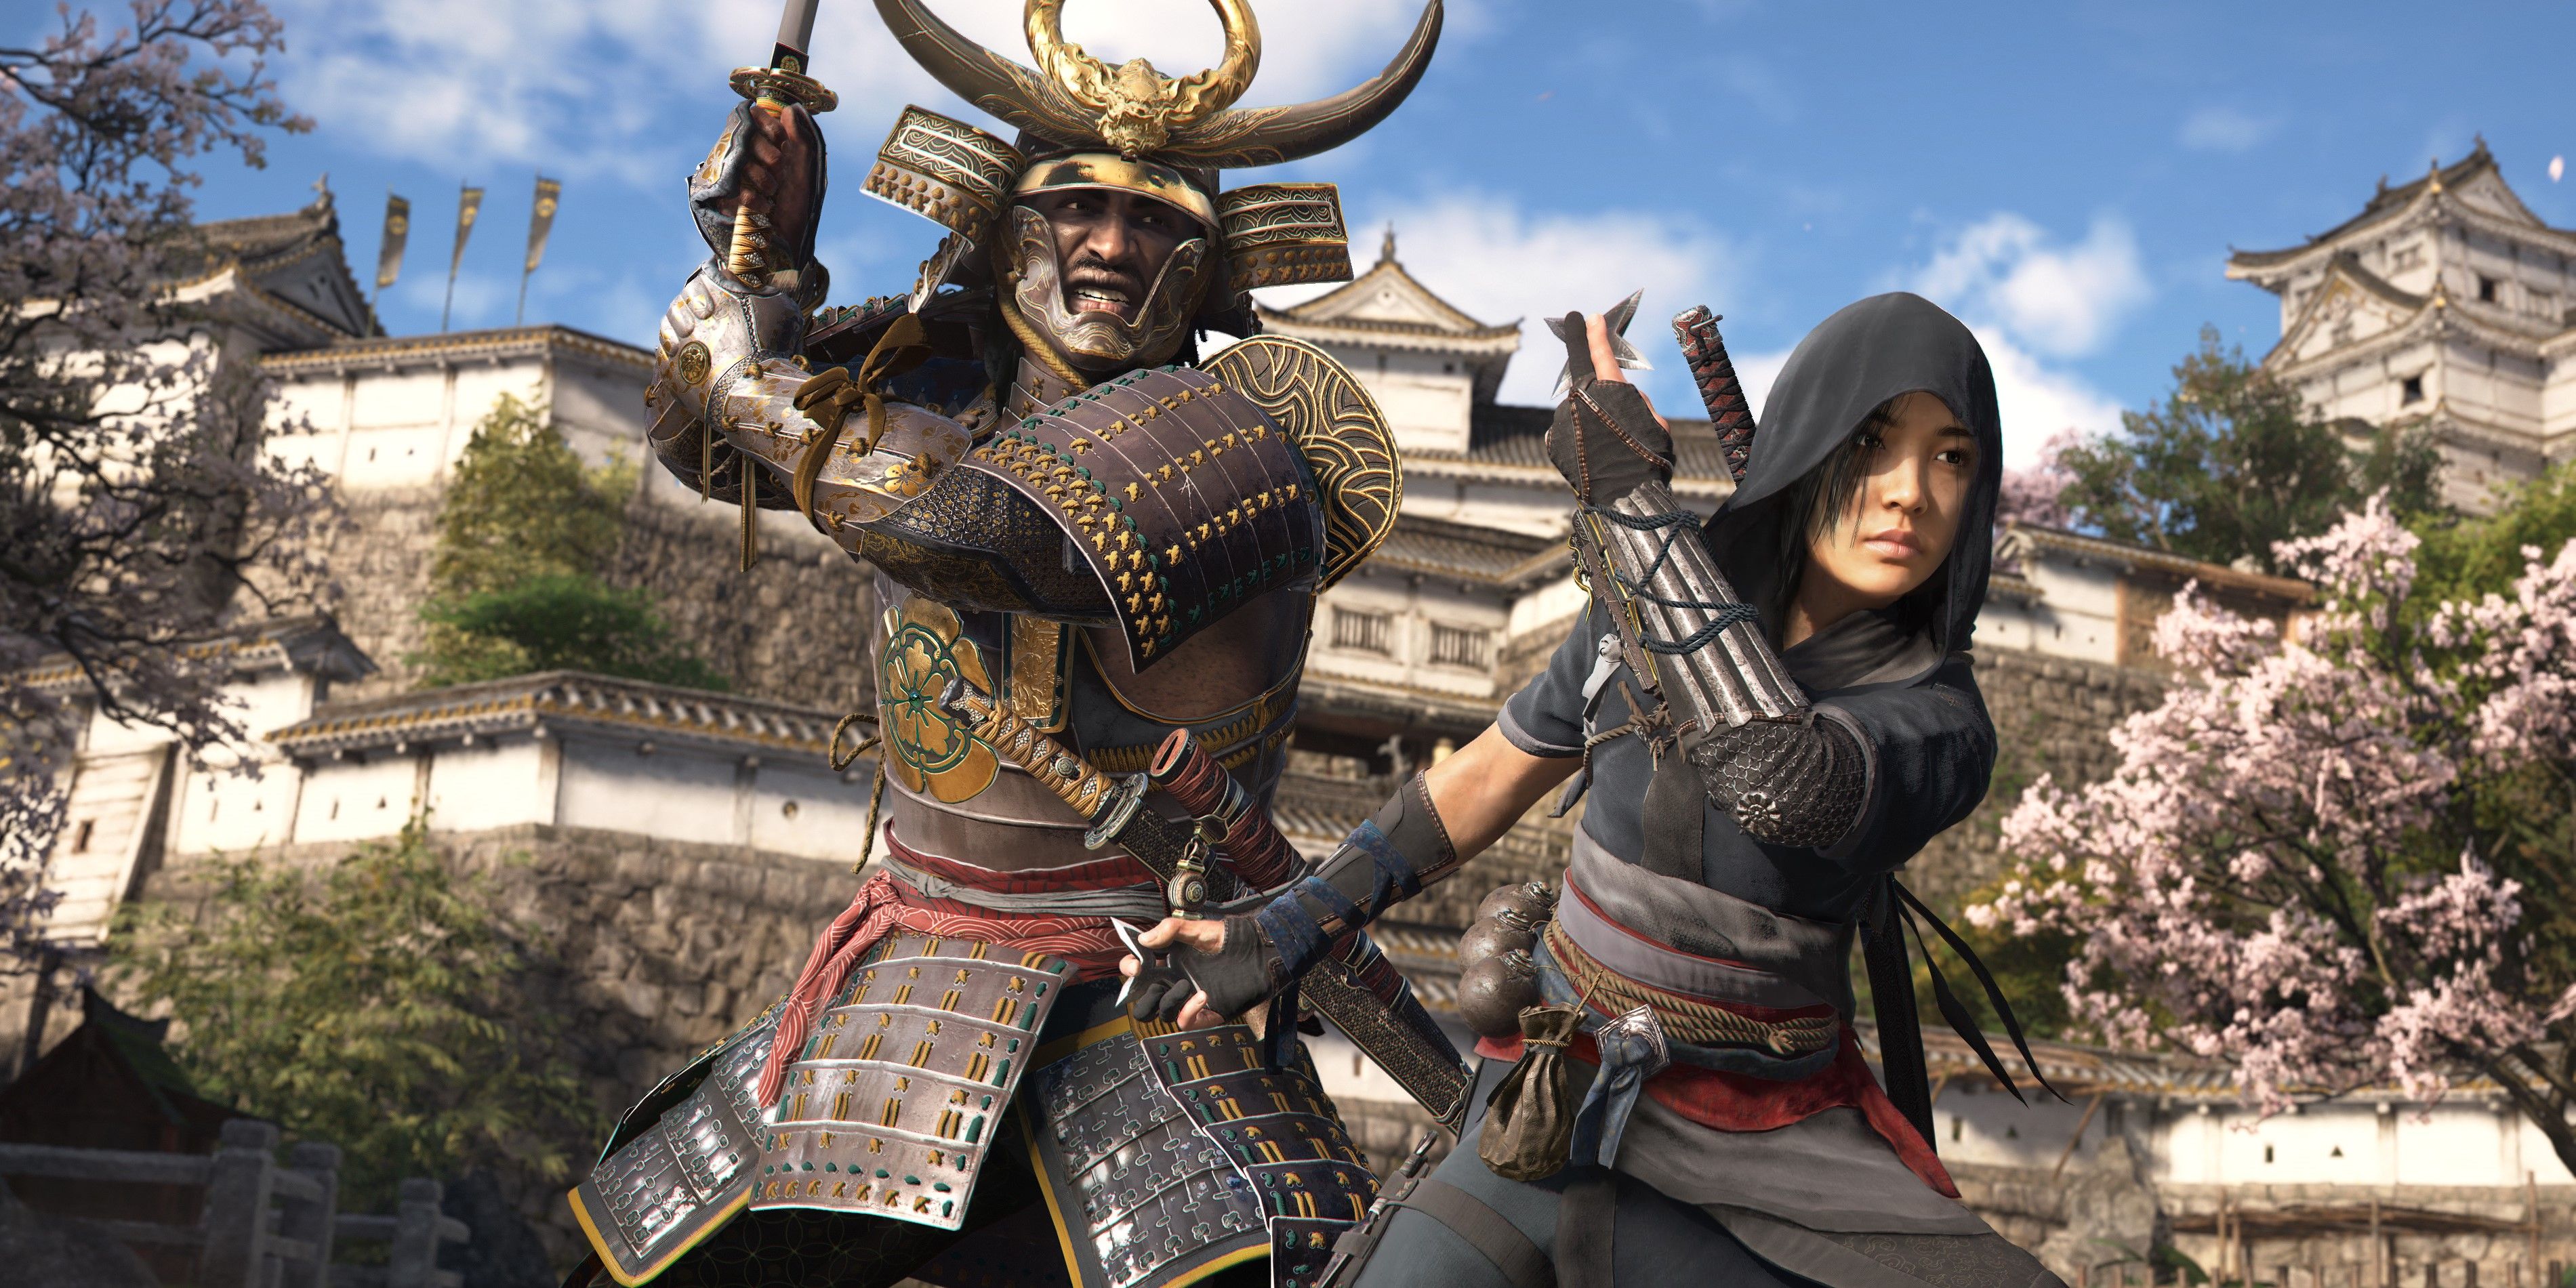 Разработчики Assassin’s Creed Shadows подробно рассказывают о преимуществах поездки в Японию спустя столько времени